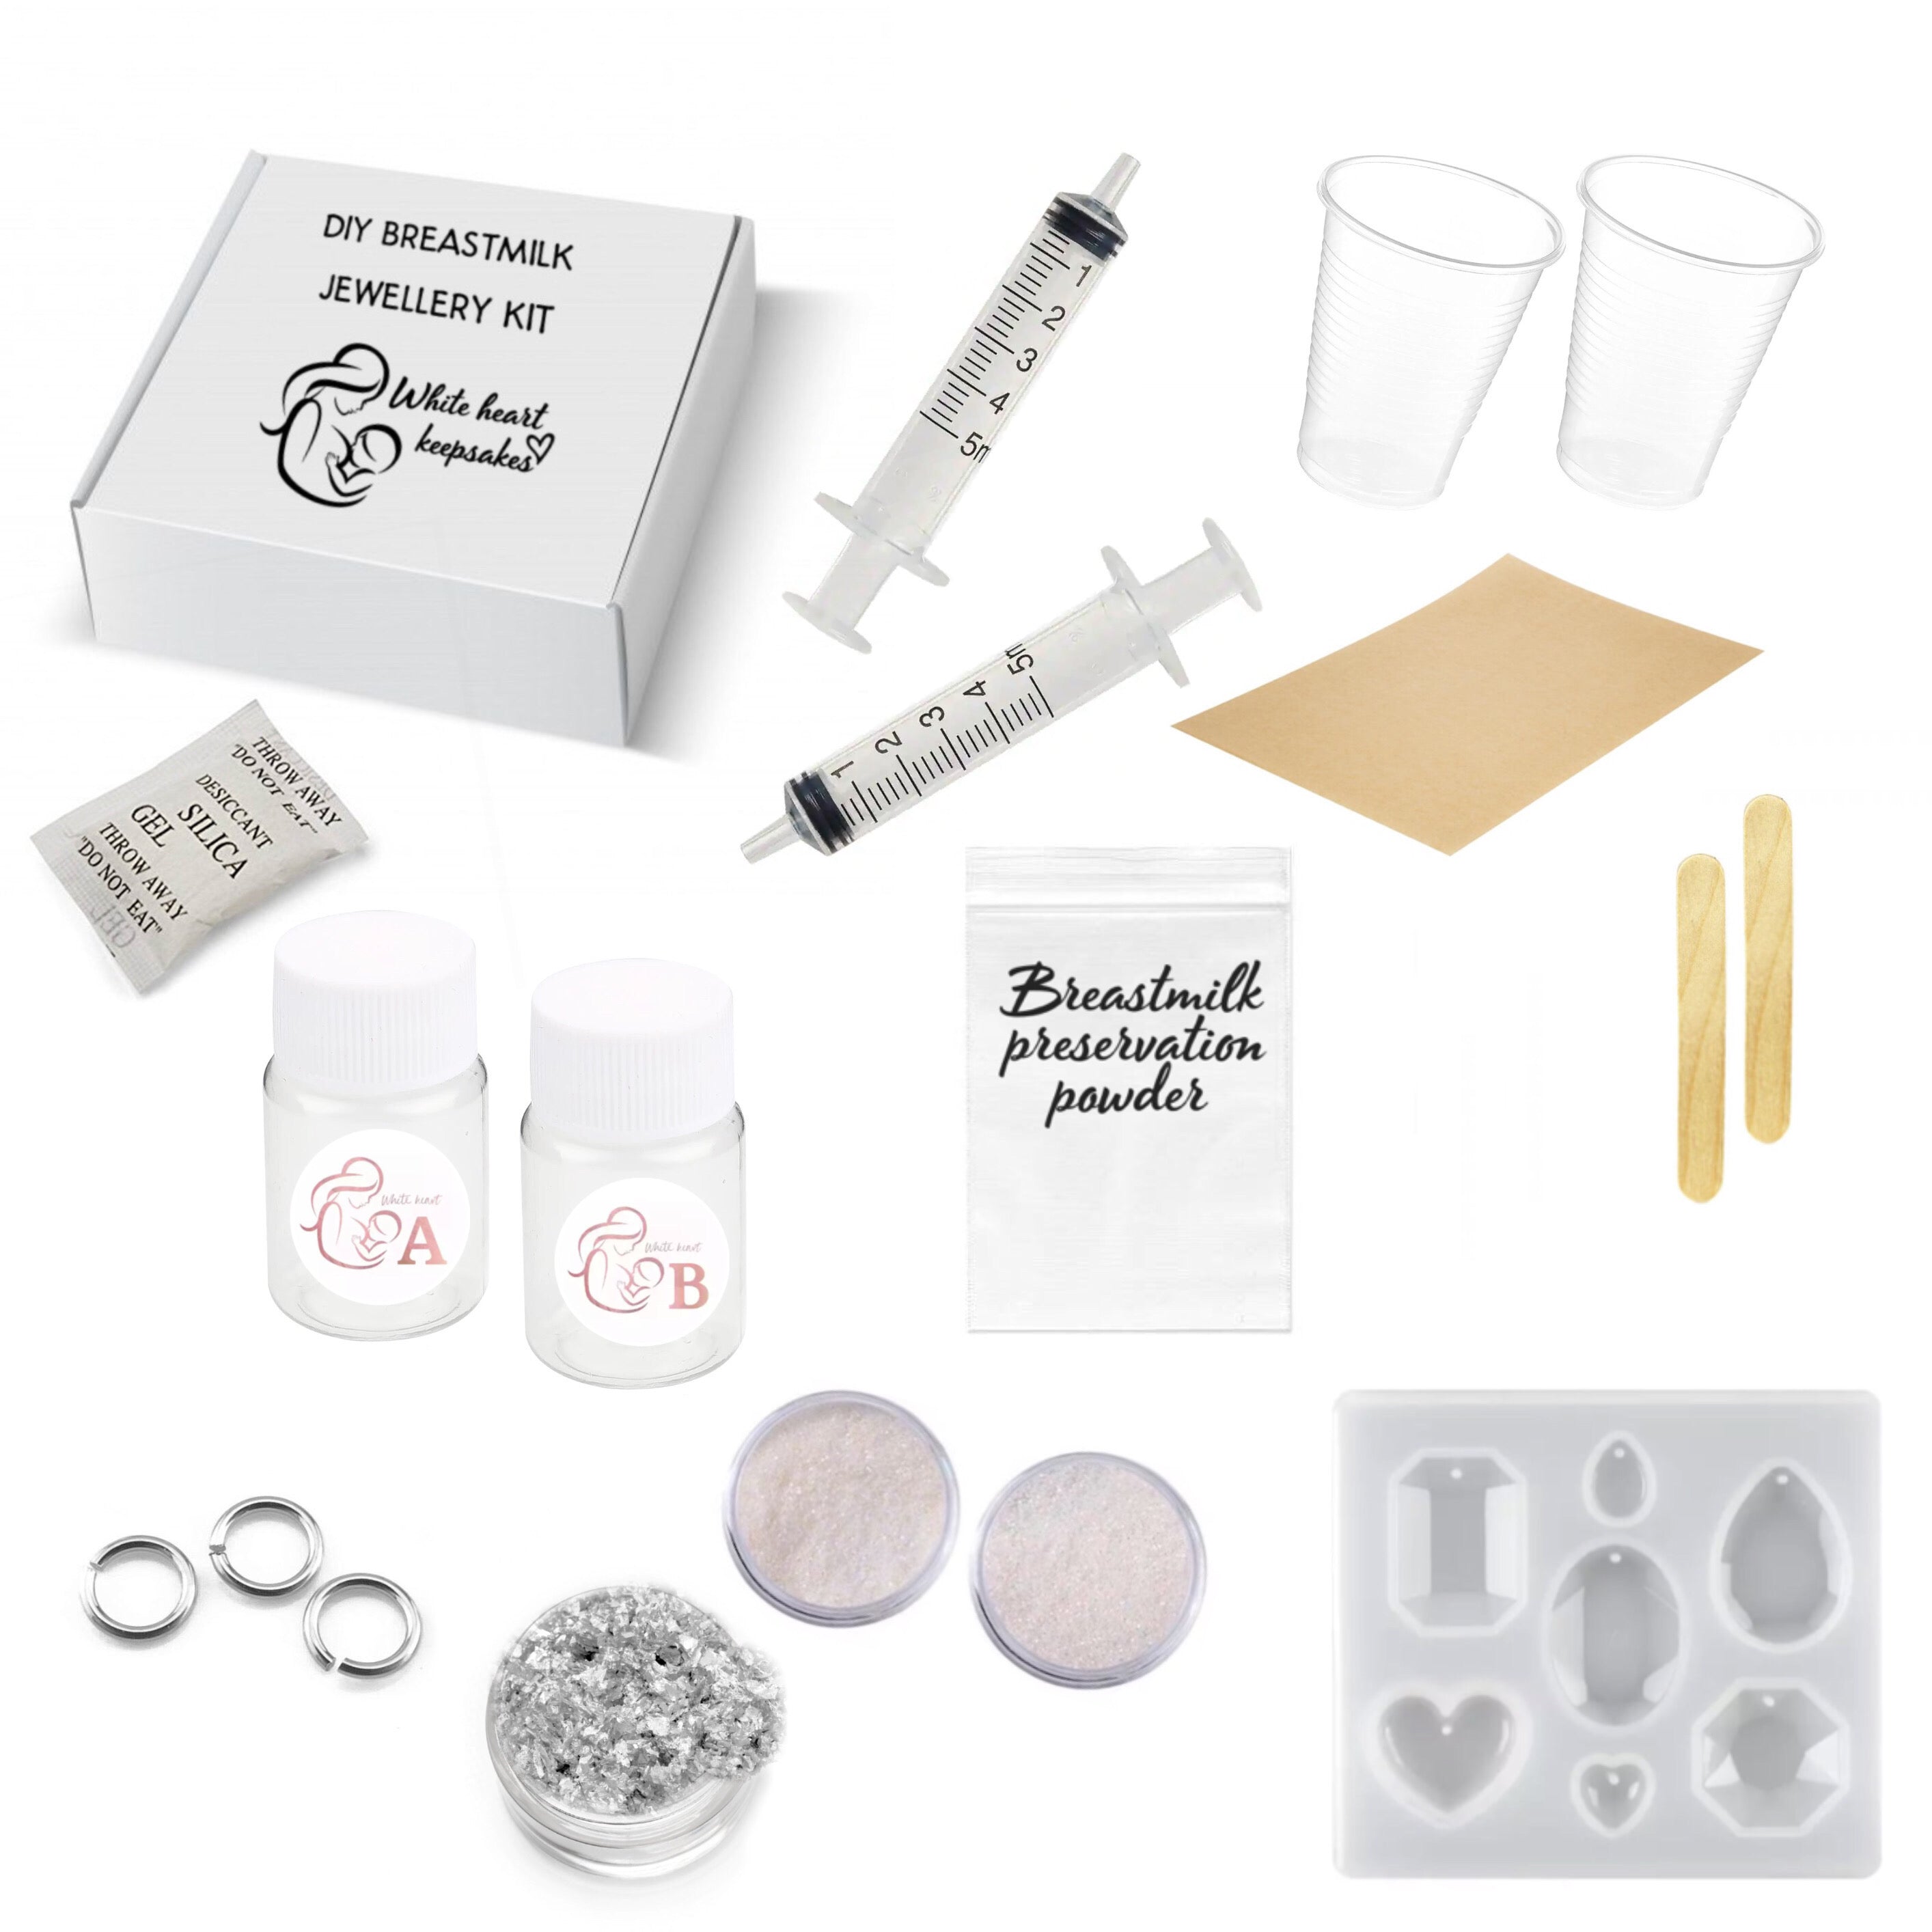 Basic DIY breastmilk jewellery kit stainless steel – White heart